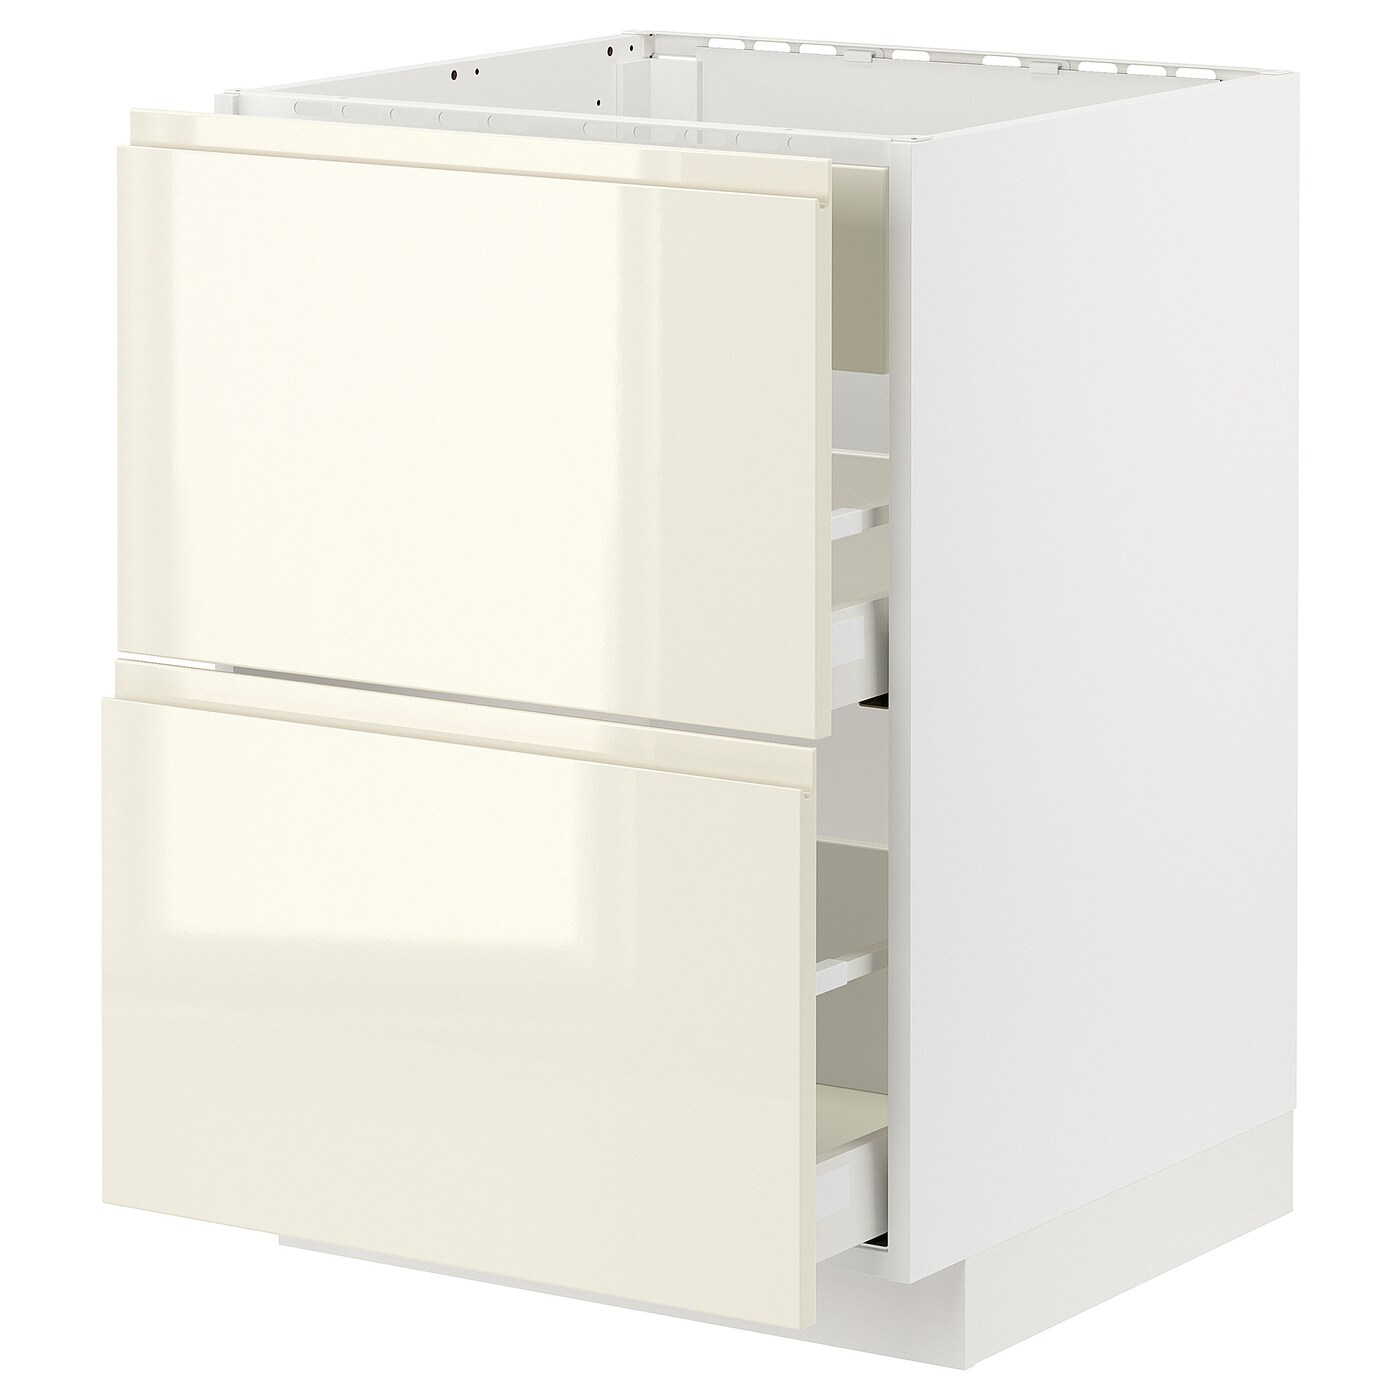 Напольный шкаф - IKEA METOD MAXIMERA, 88x62x60см,  белый, МЕТОД МАКСИМЕРА ИКЕА